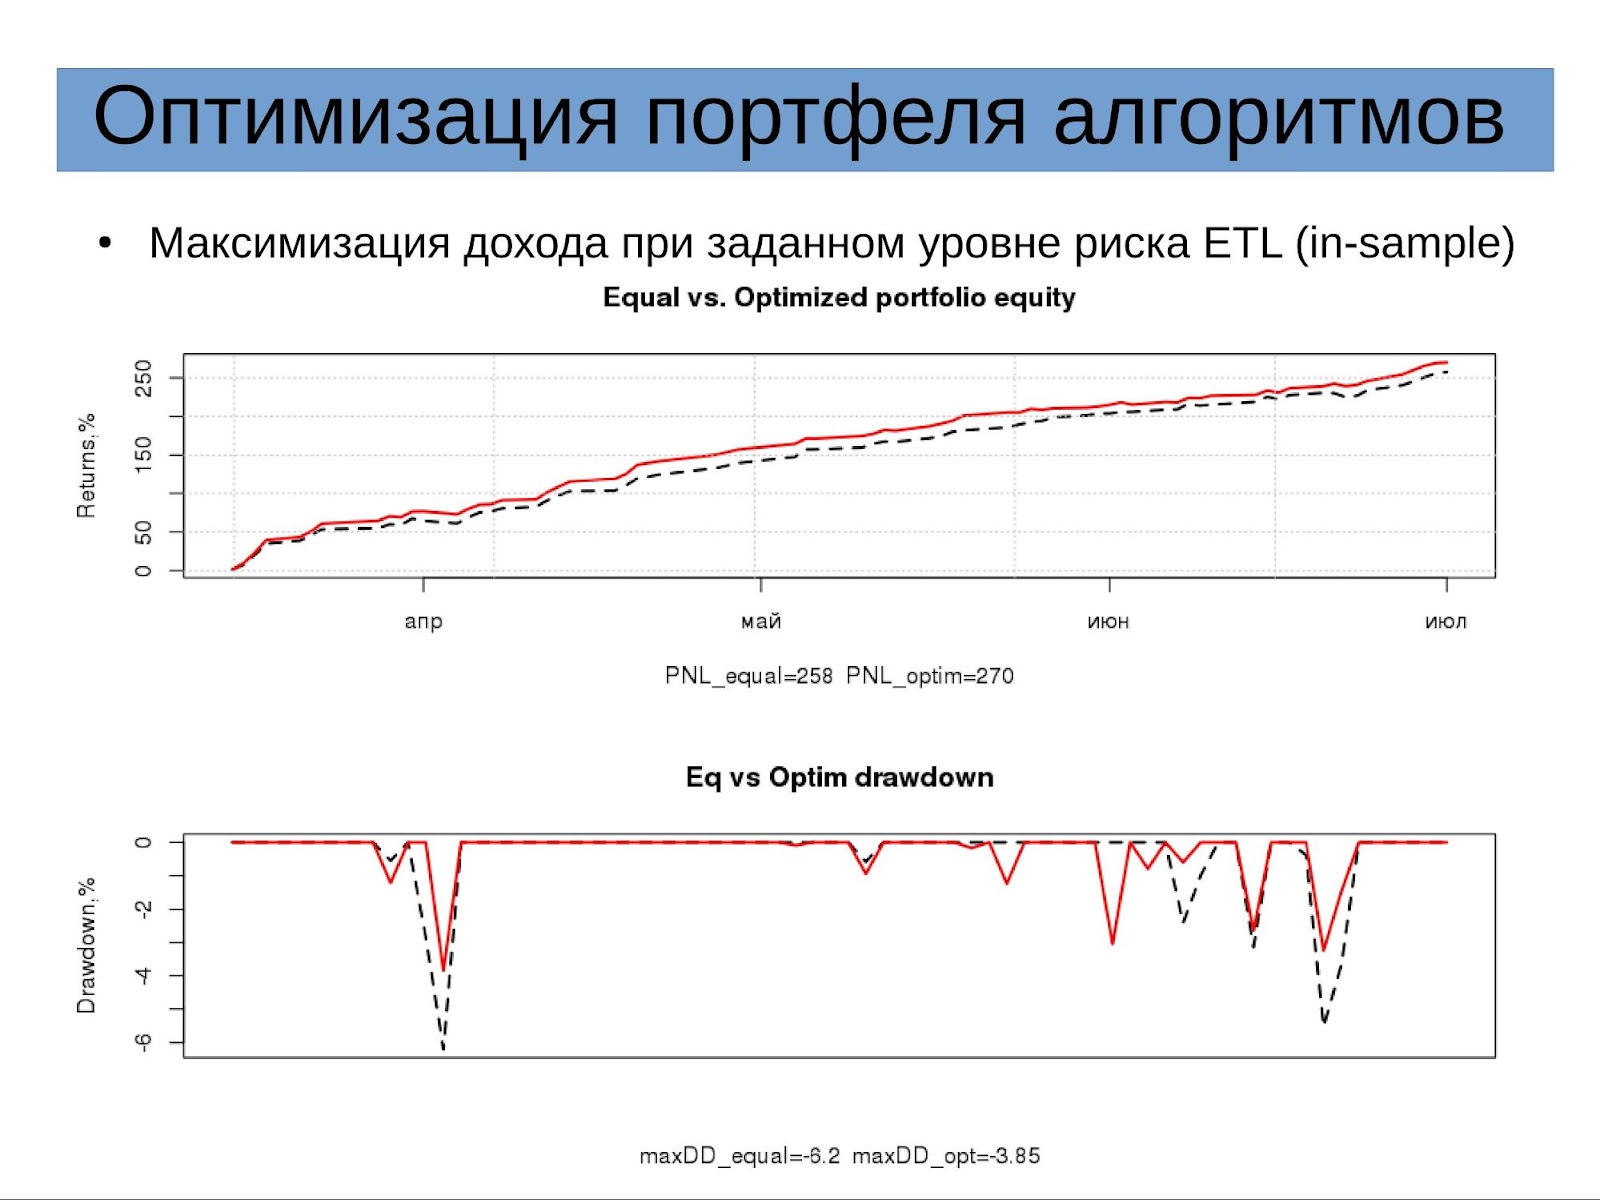 Доклад «Оптимизация портфеля алгоритмических стратегий» на конфе смартлаба 24.09.16